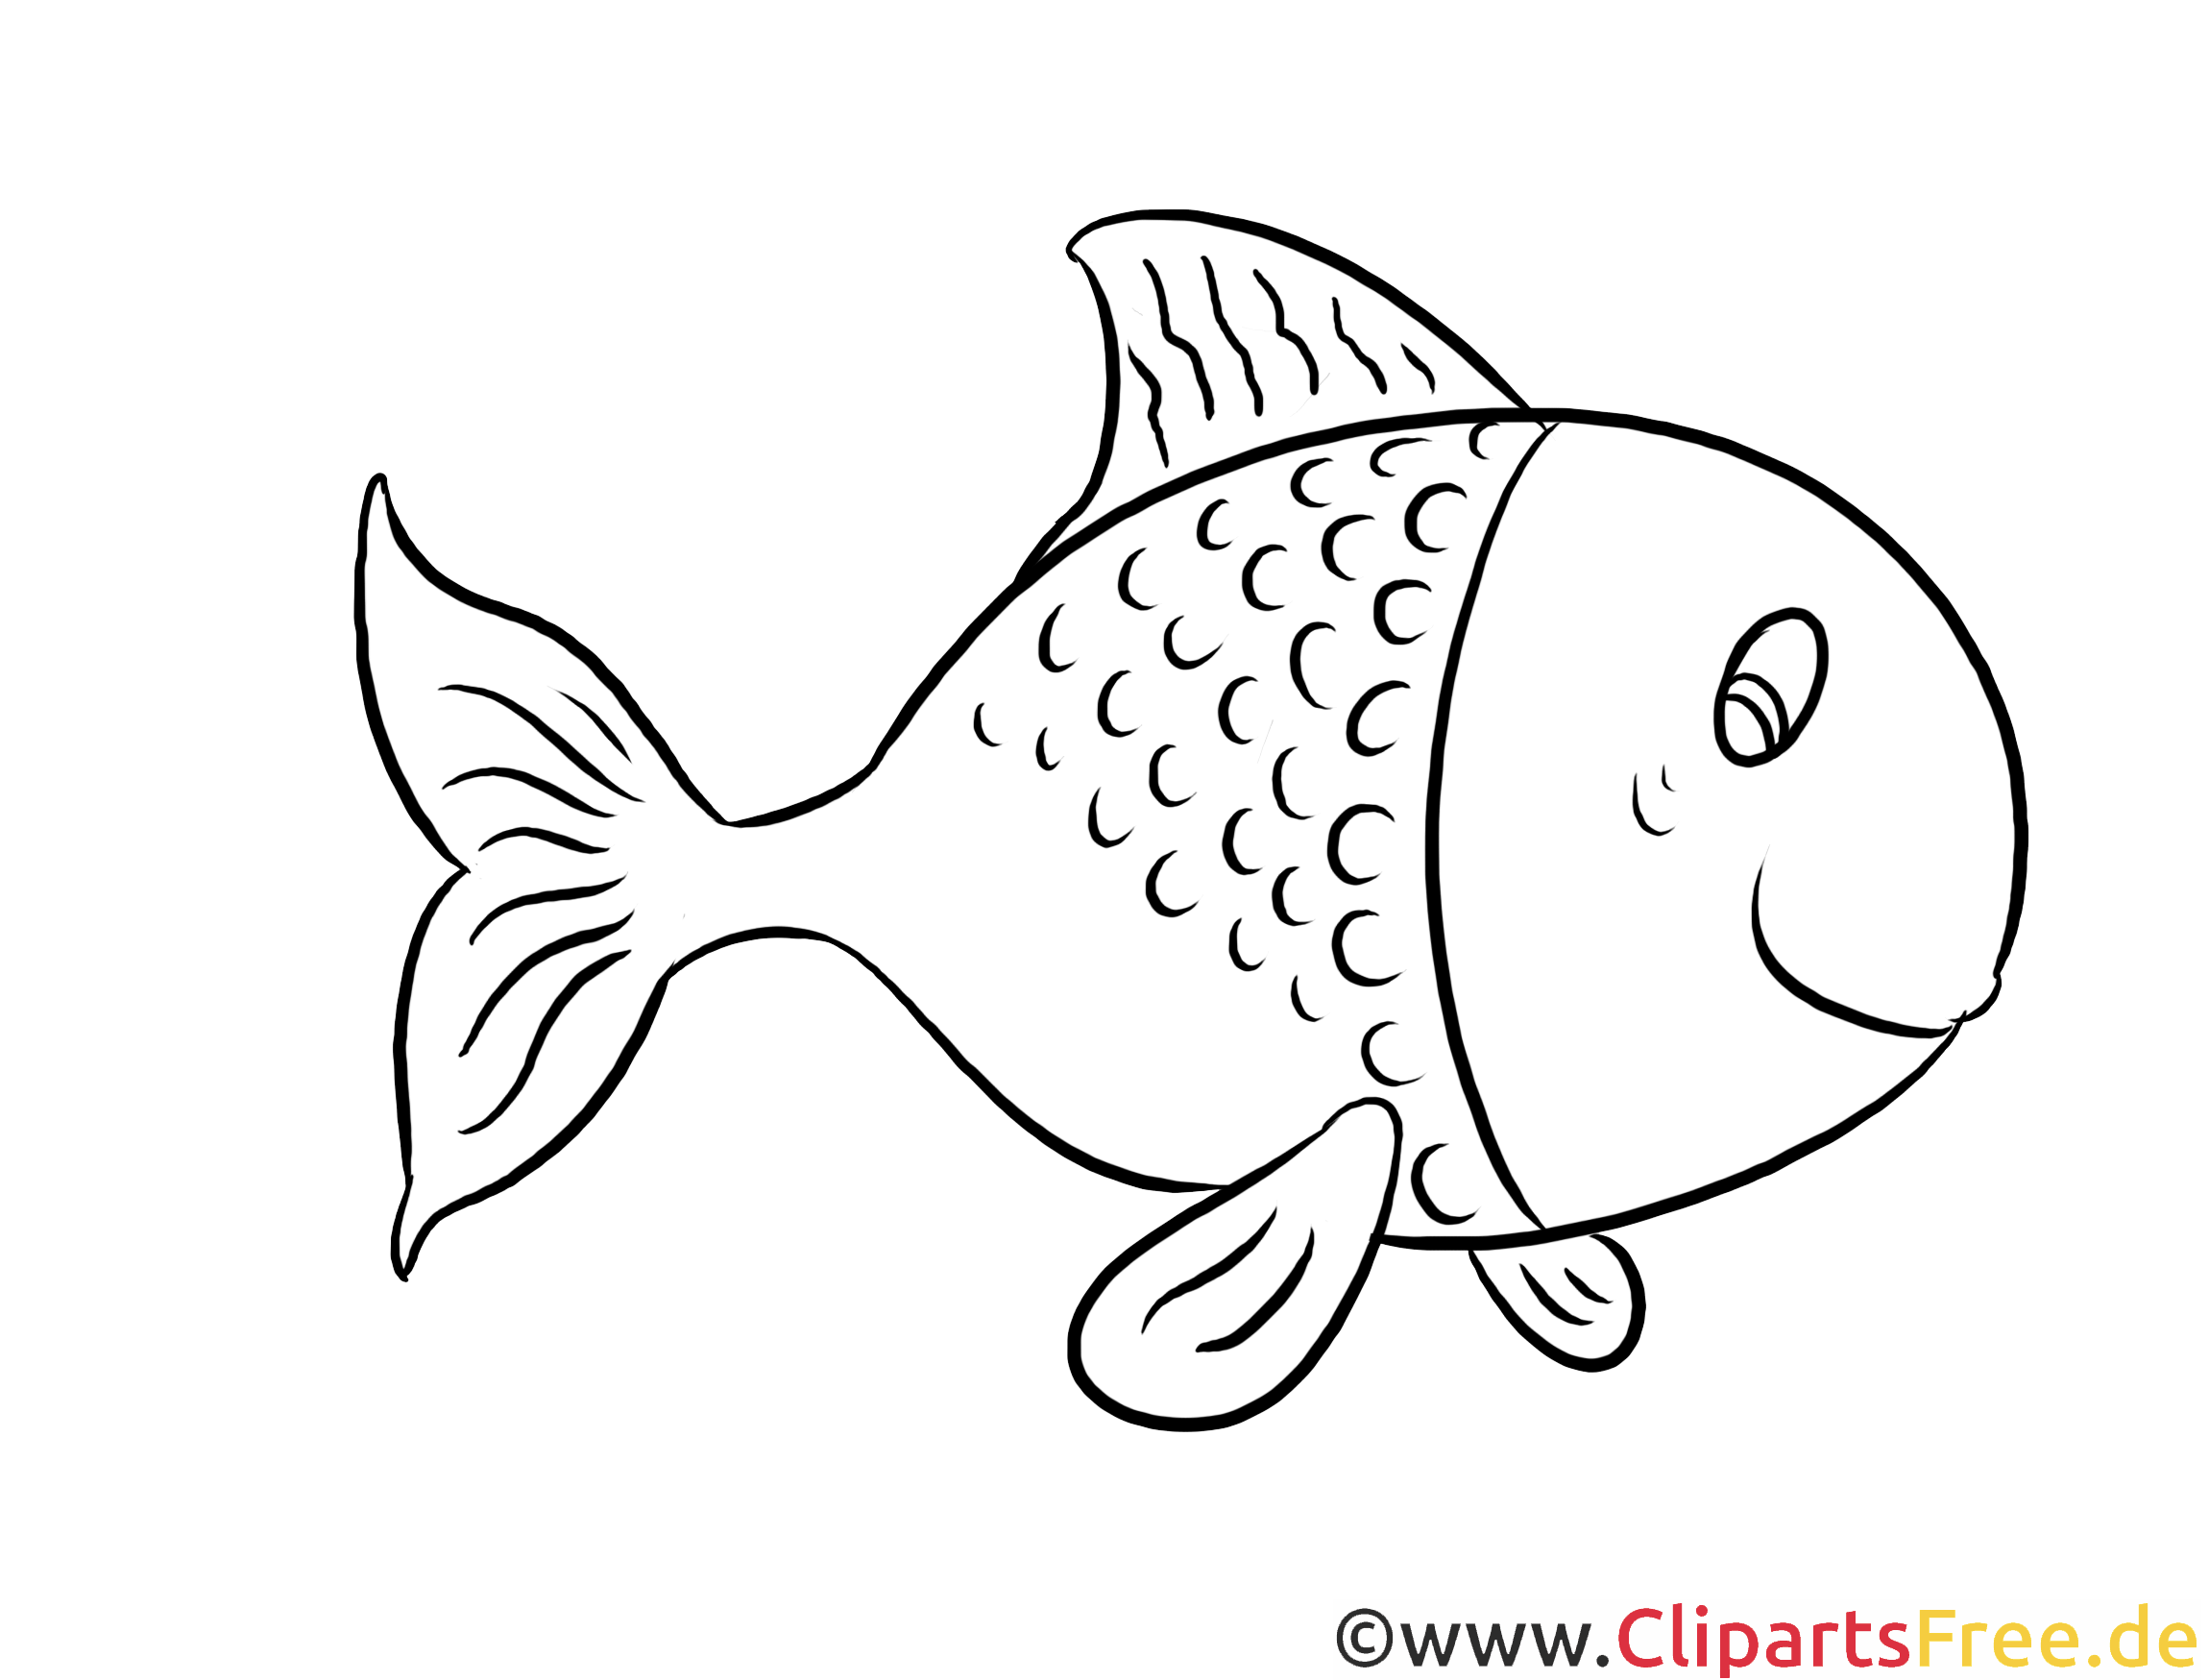 Farbung Malvorlagen Malvorlagenfurkinder Malvorlagen Tiere Fisch Vorlage Malvorlagen